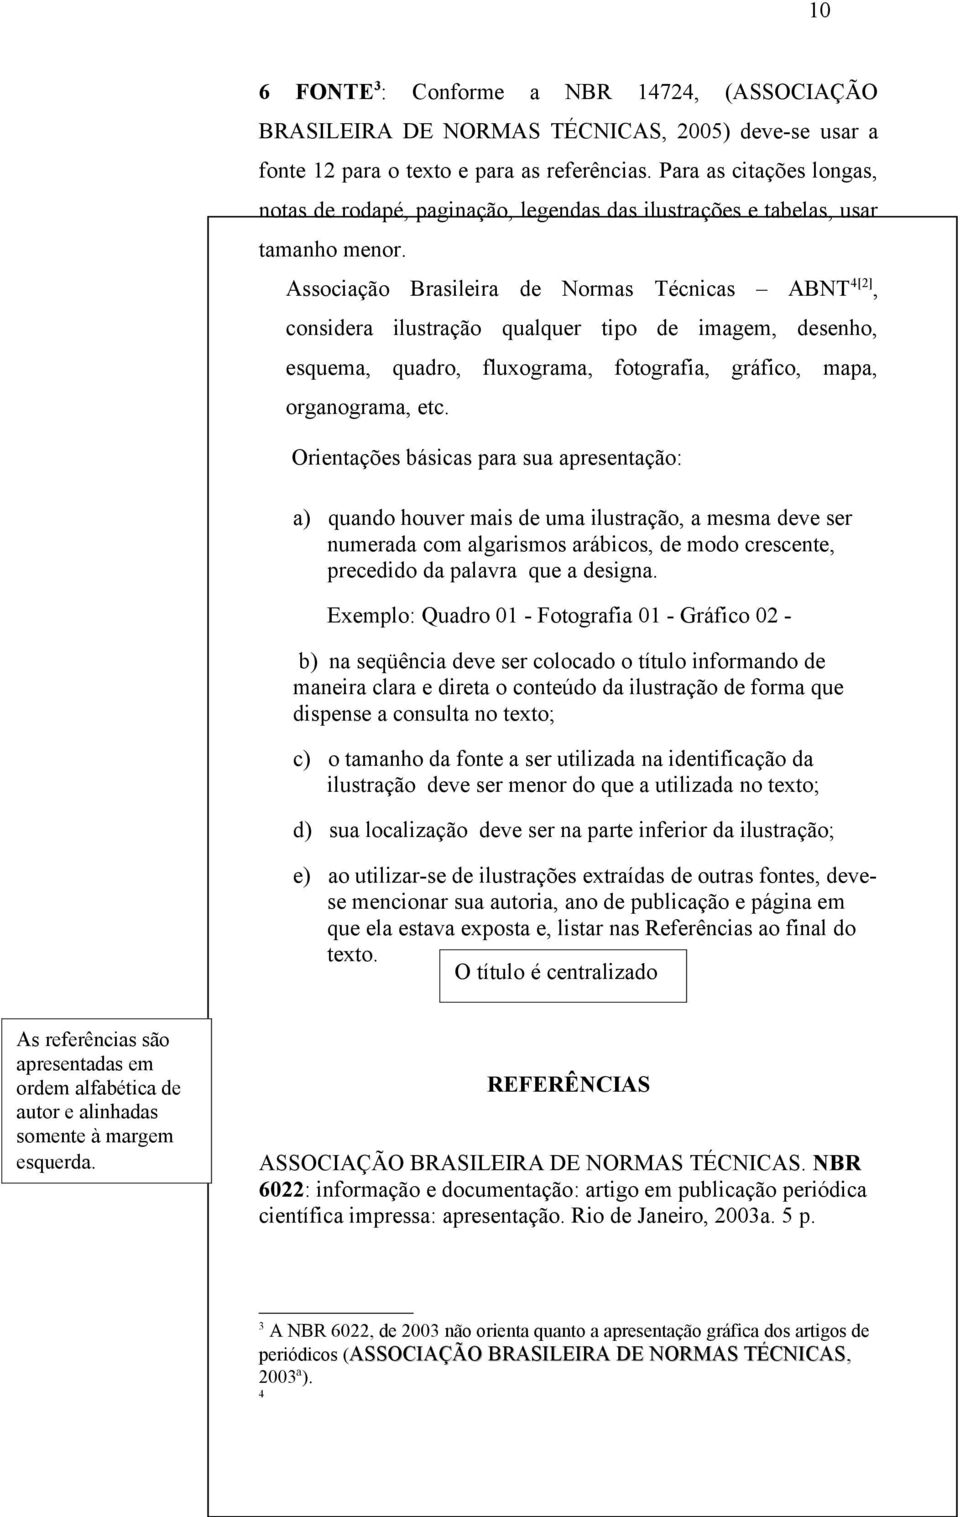 Associação Brasileira de Normas Técnicas ABNT 4[2], considera ilustração qualquer tipo de imagem, desenho, esquema, quadro, fluxograma, fotografia, gráfico, mapa, organograma, etc.